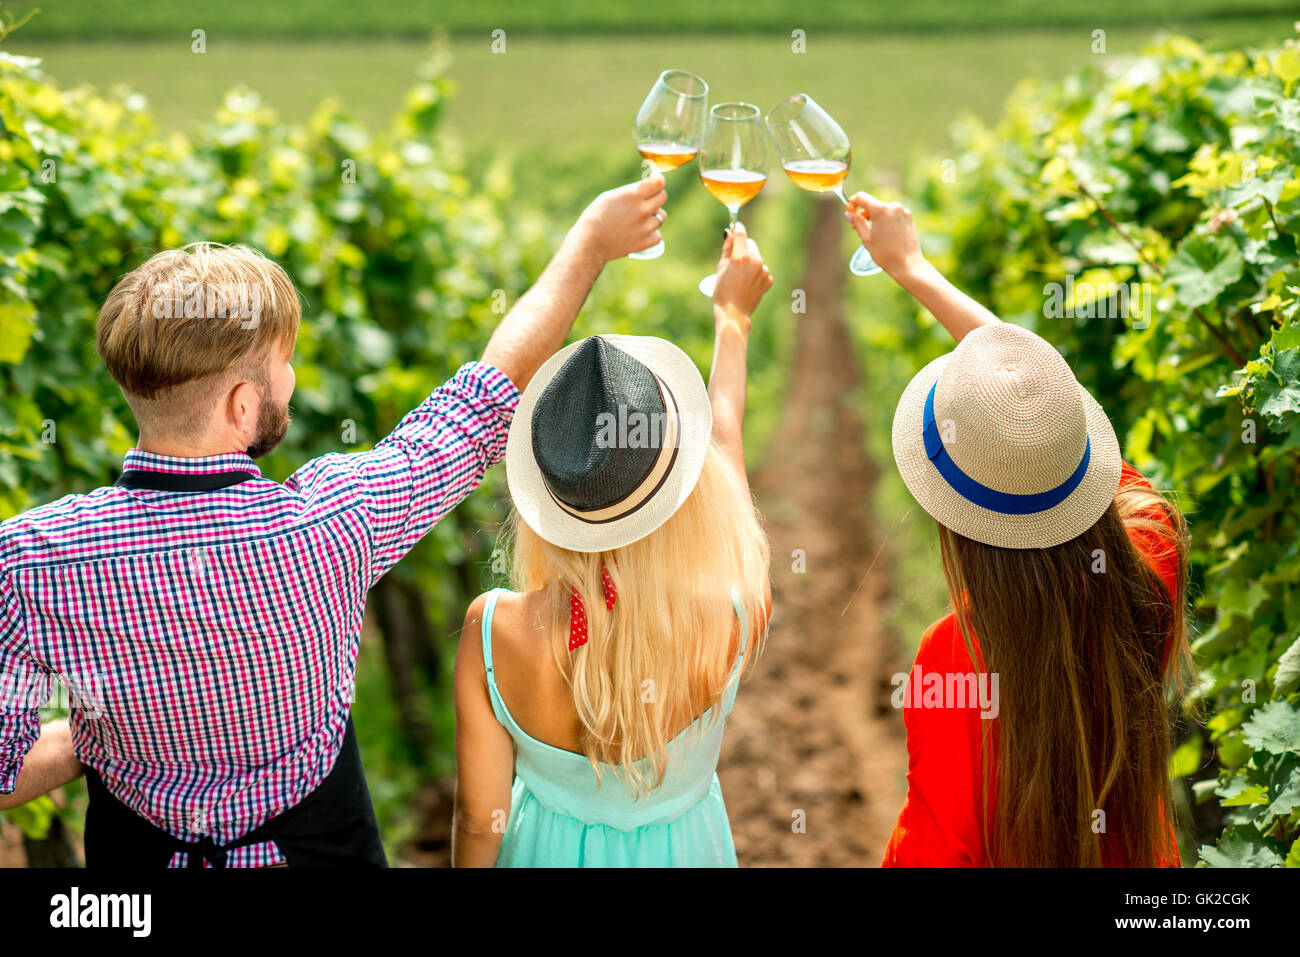 Wine degustation on the vineyard Stock Photo